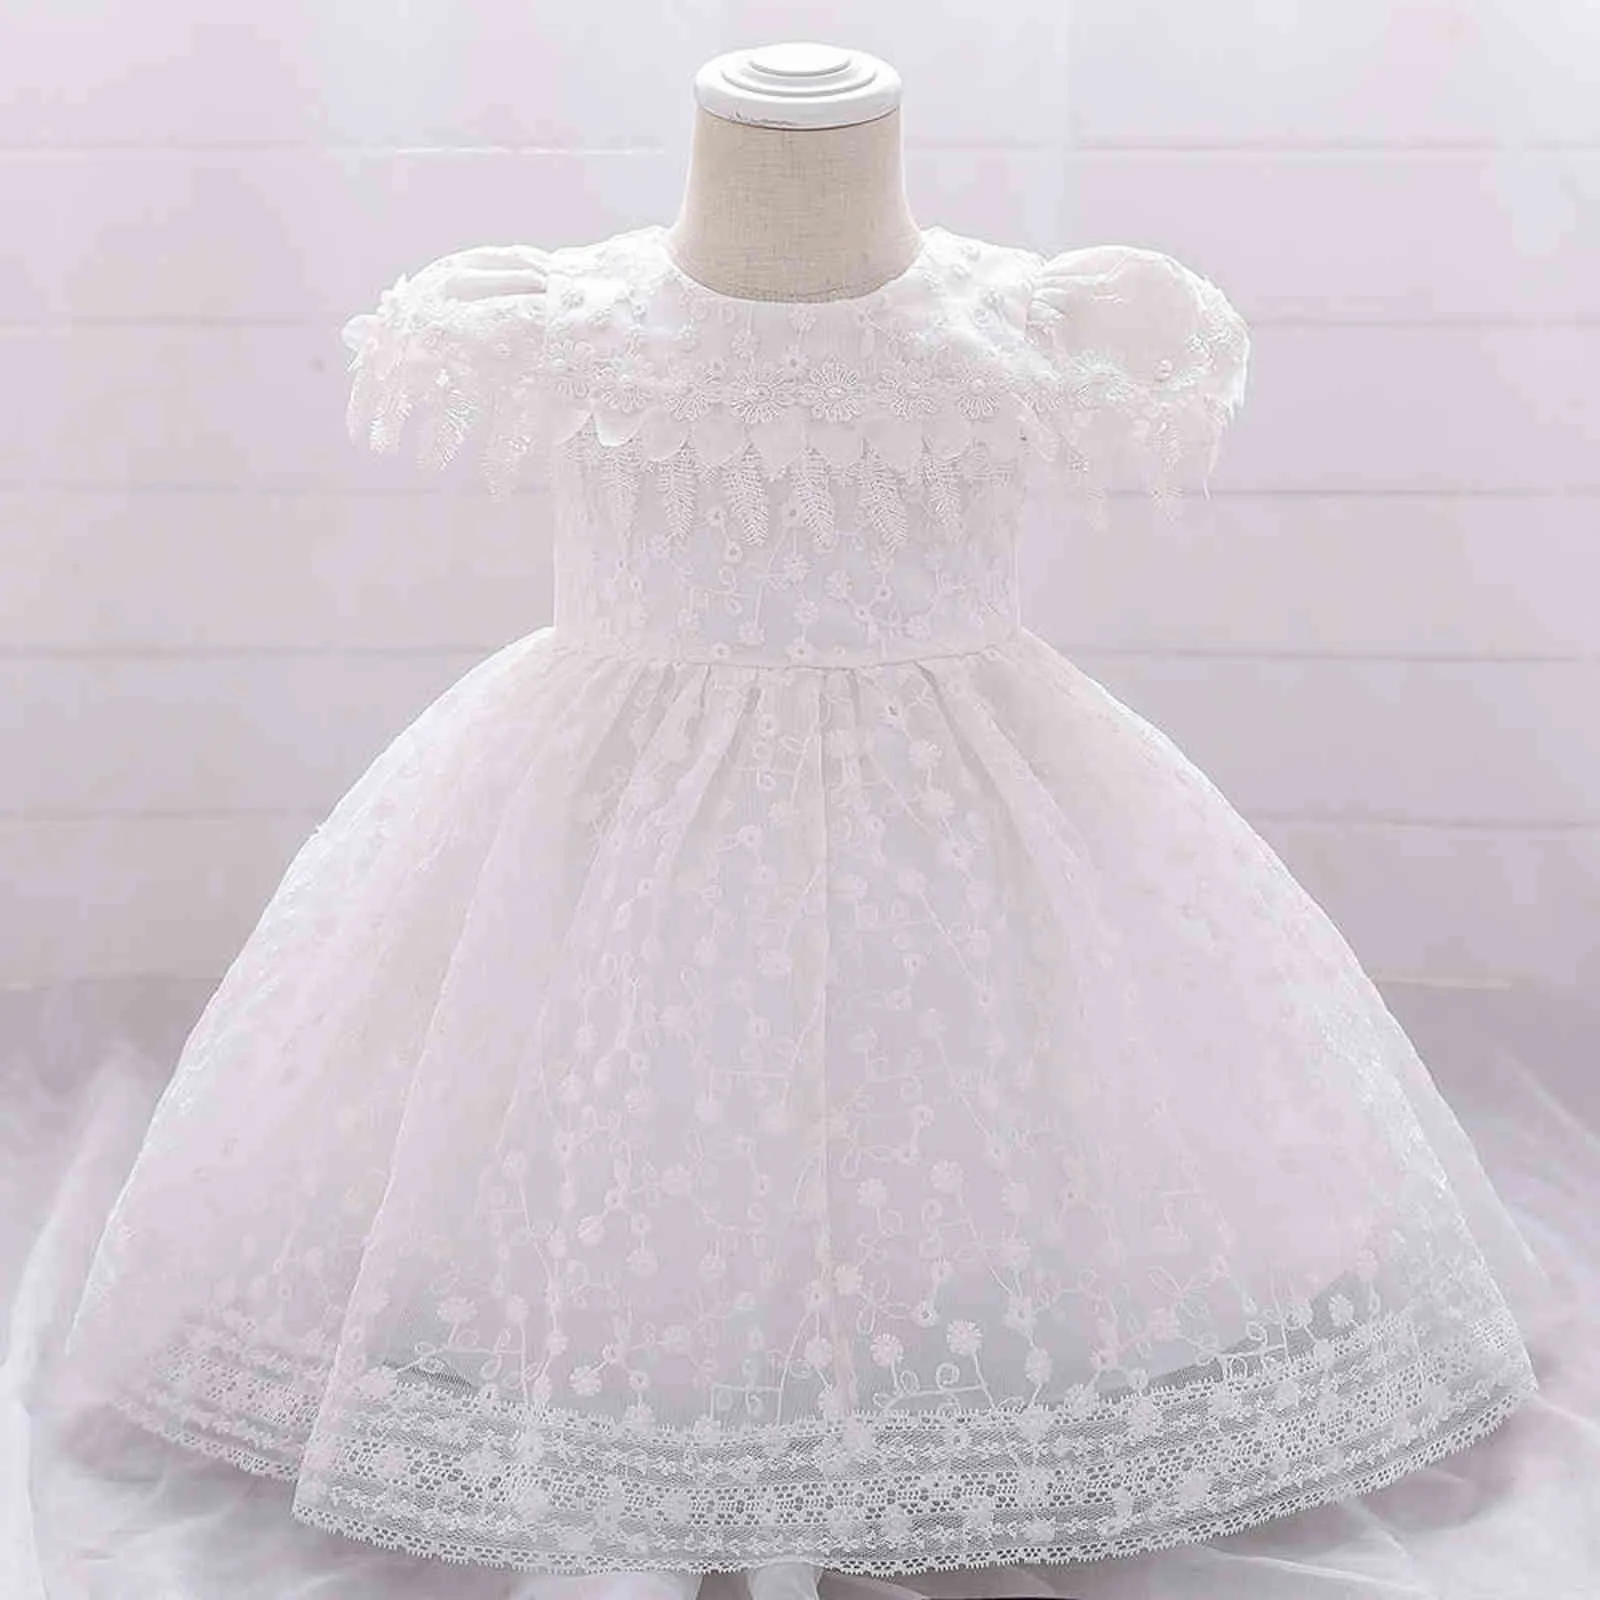 Dziecko Chrzest Sukienki Dla Dziewczyny Suknie Chrzciny Wedding Party Lace Dress Infant Baby 1st Birthday Princess Dress G1129